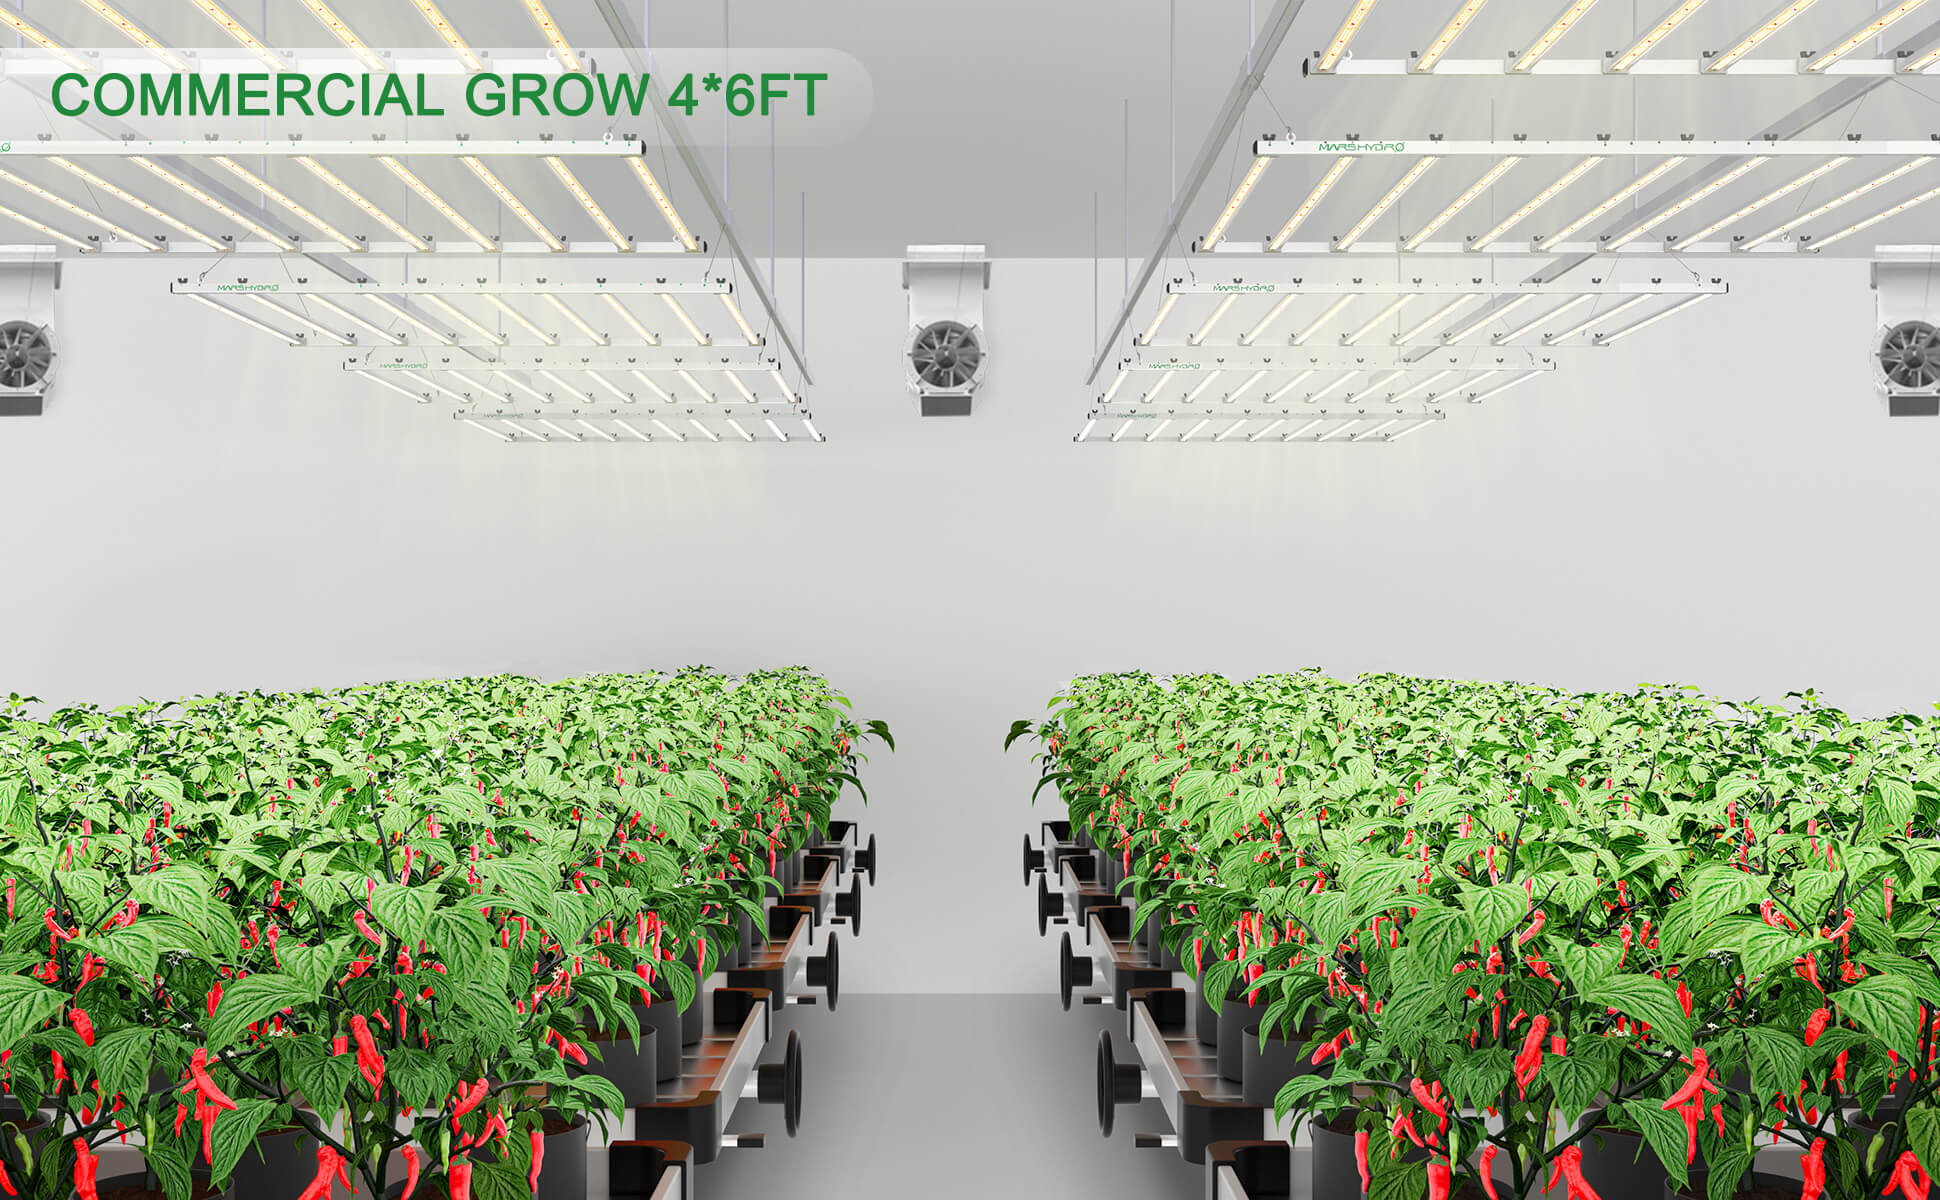 mars-hydro-fce1000W-led-grow-light-commercial-grow-4x6ft